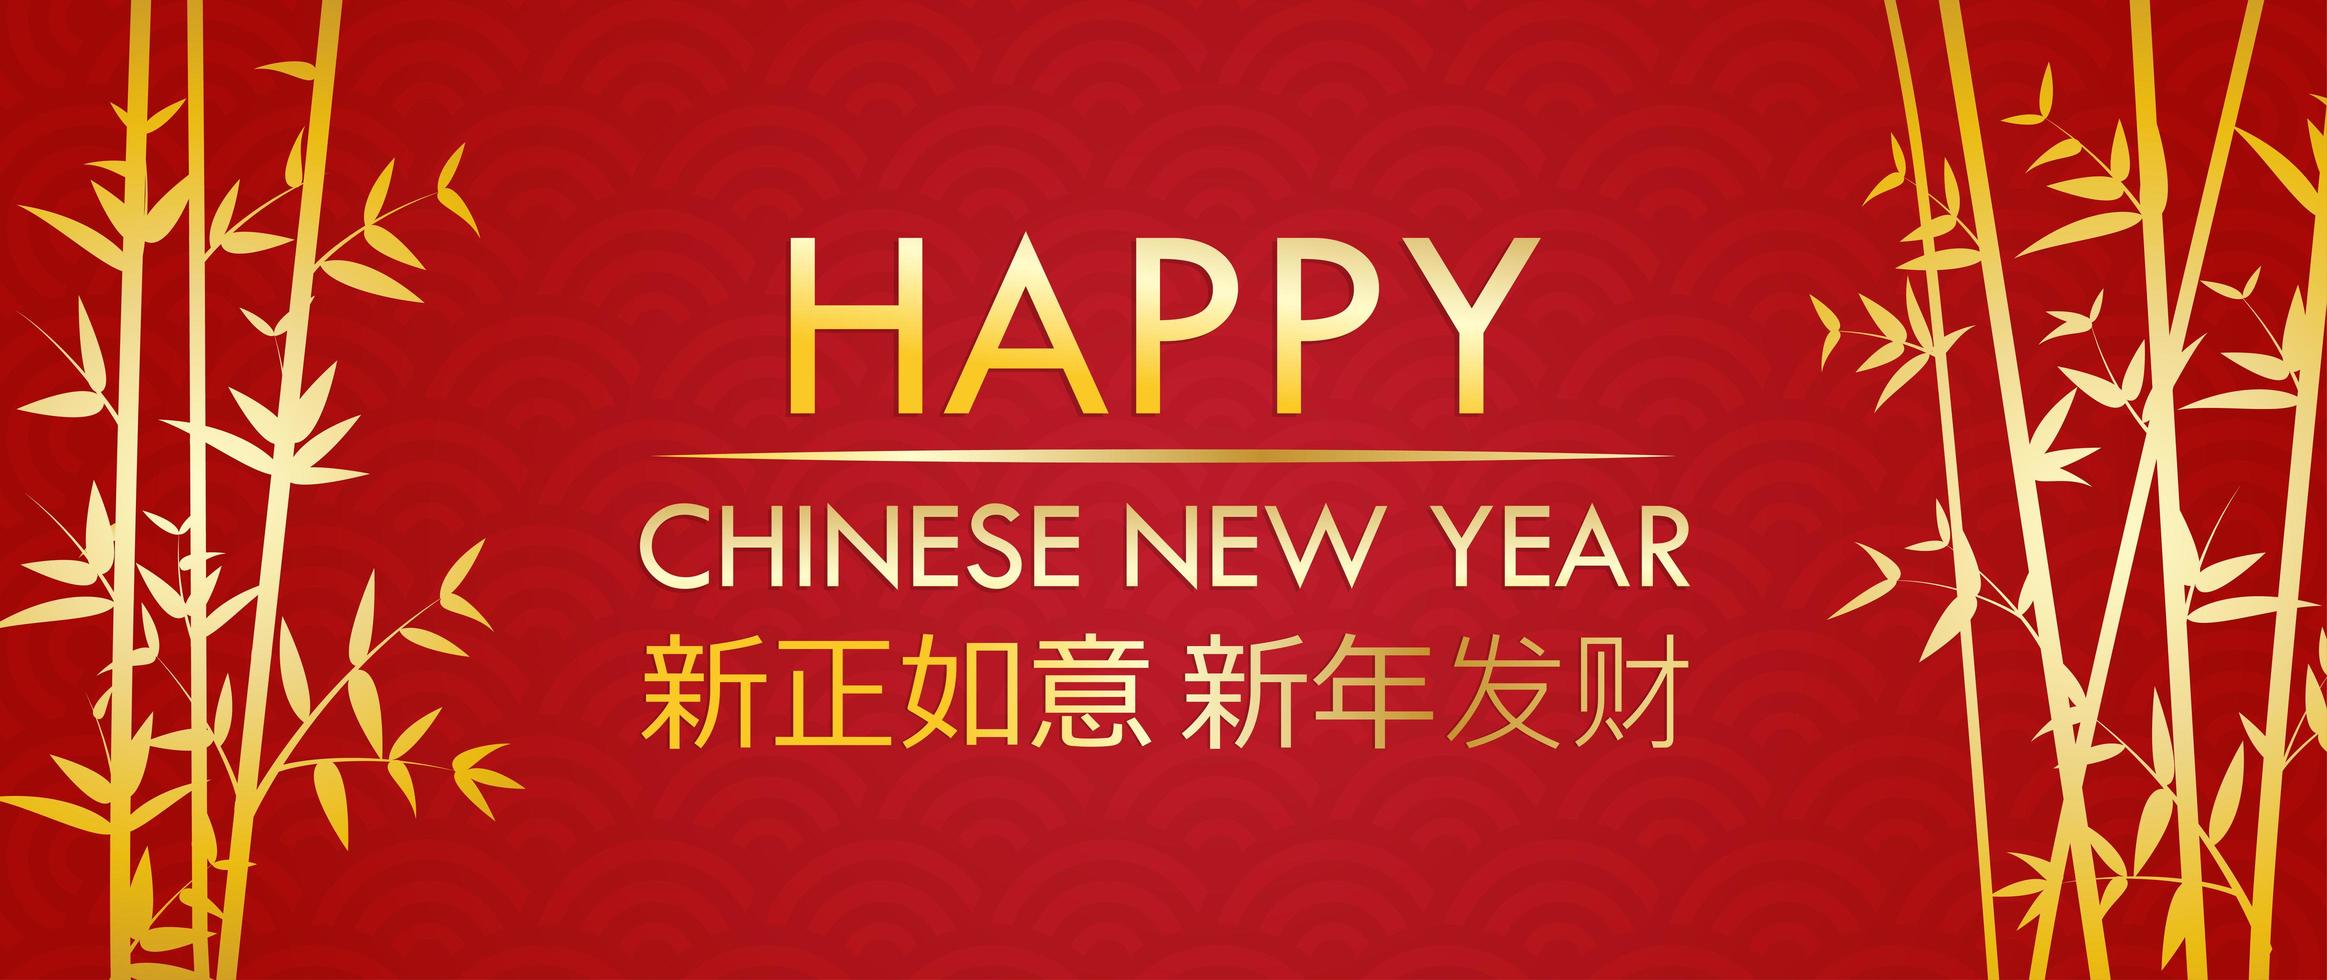 Gratulationskort för lyckligt kinesiskt nytt år med guldbambu på röd modell vektor